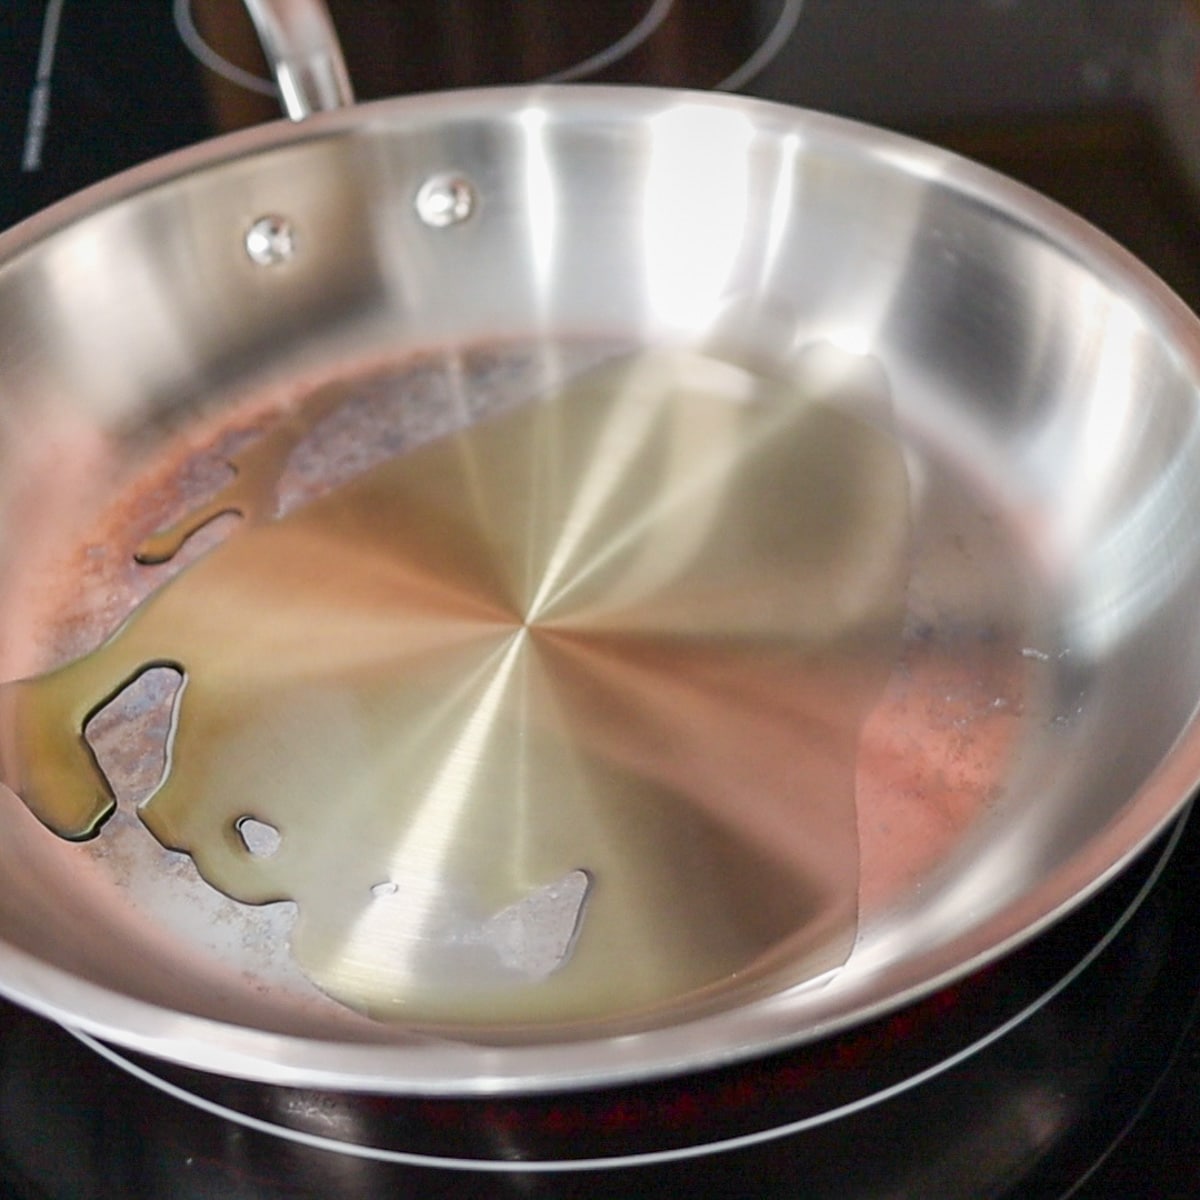 heating avocado oil in pan